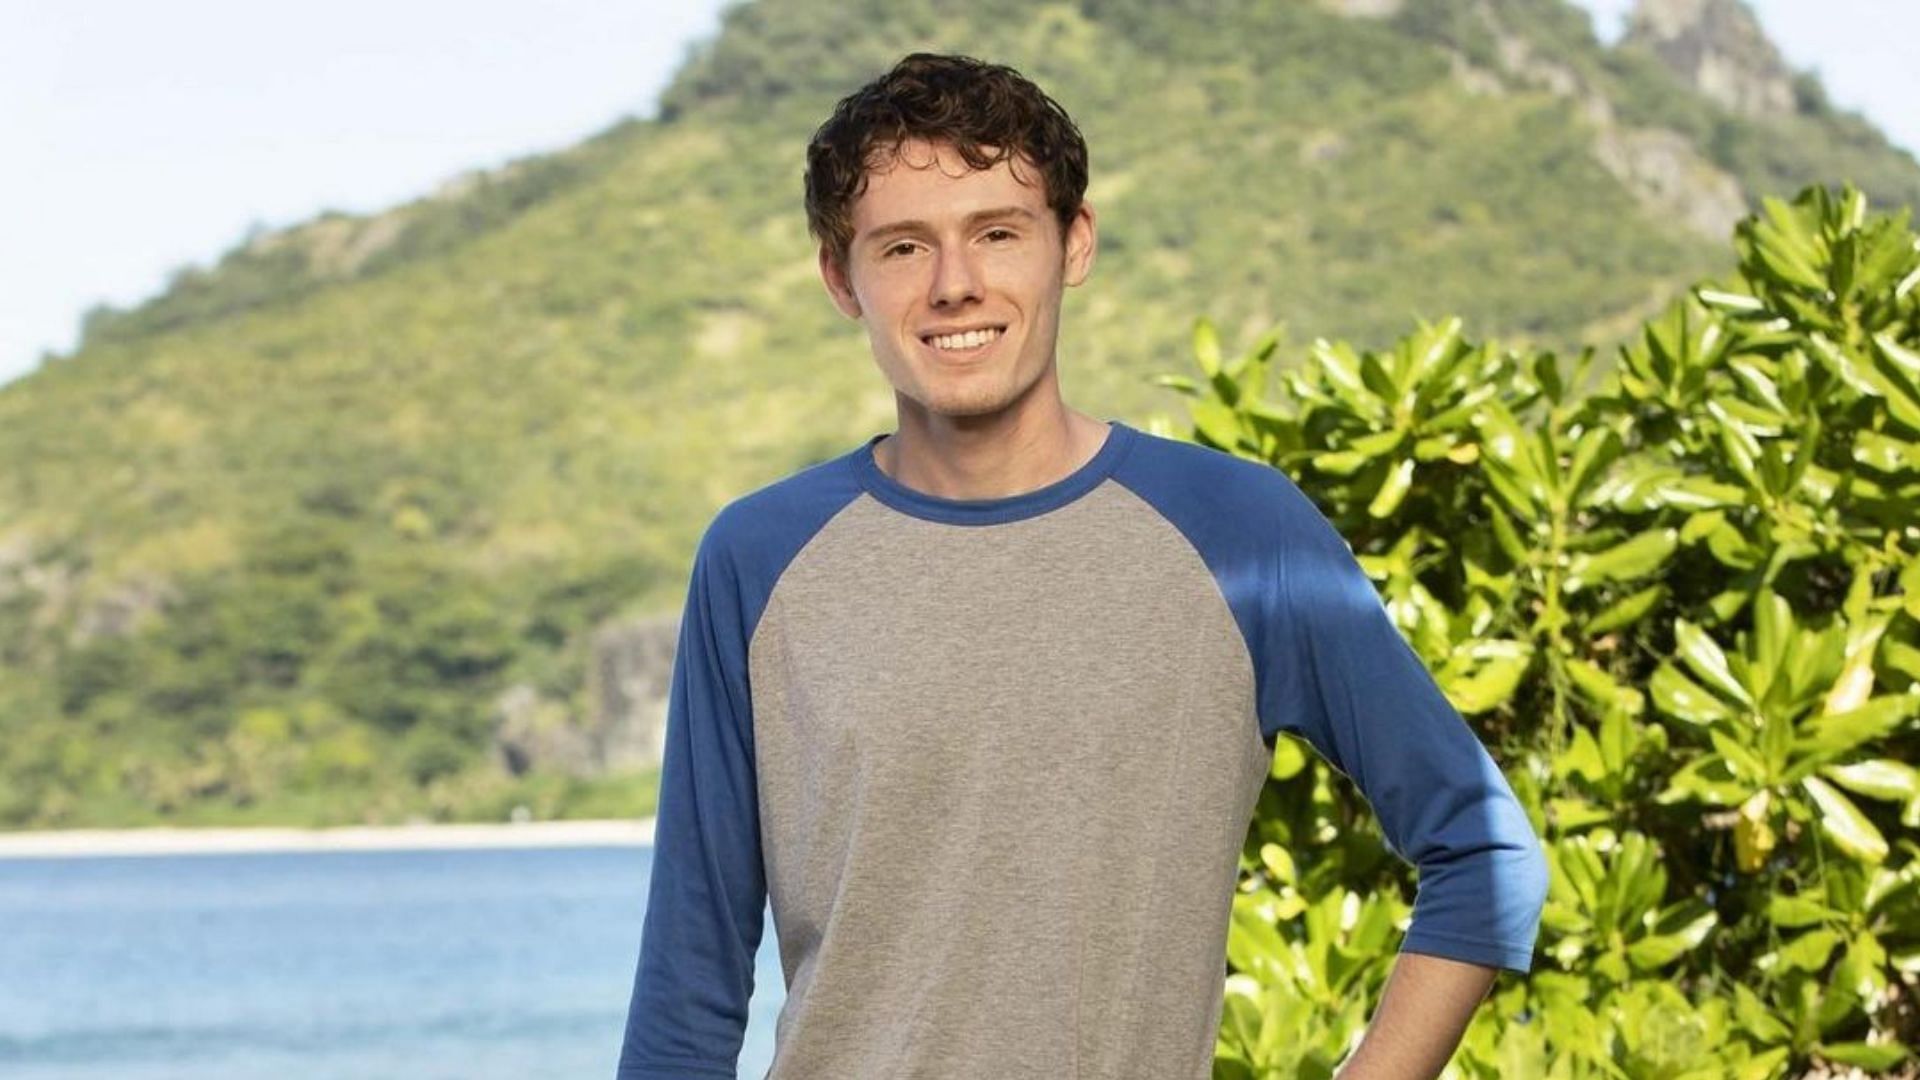 Meet Zach Wurtenberger from Survivor Season 42 (Image via zachwurt/Instagram)